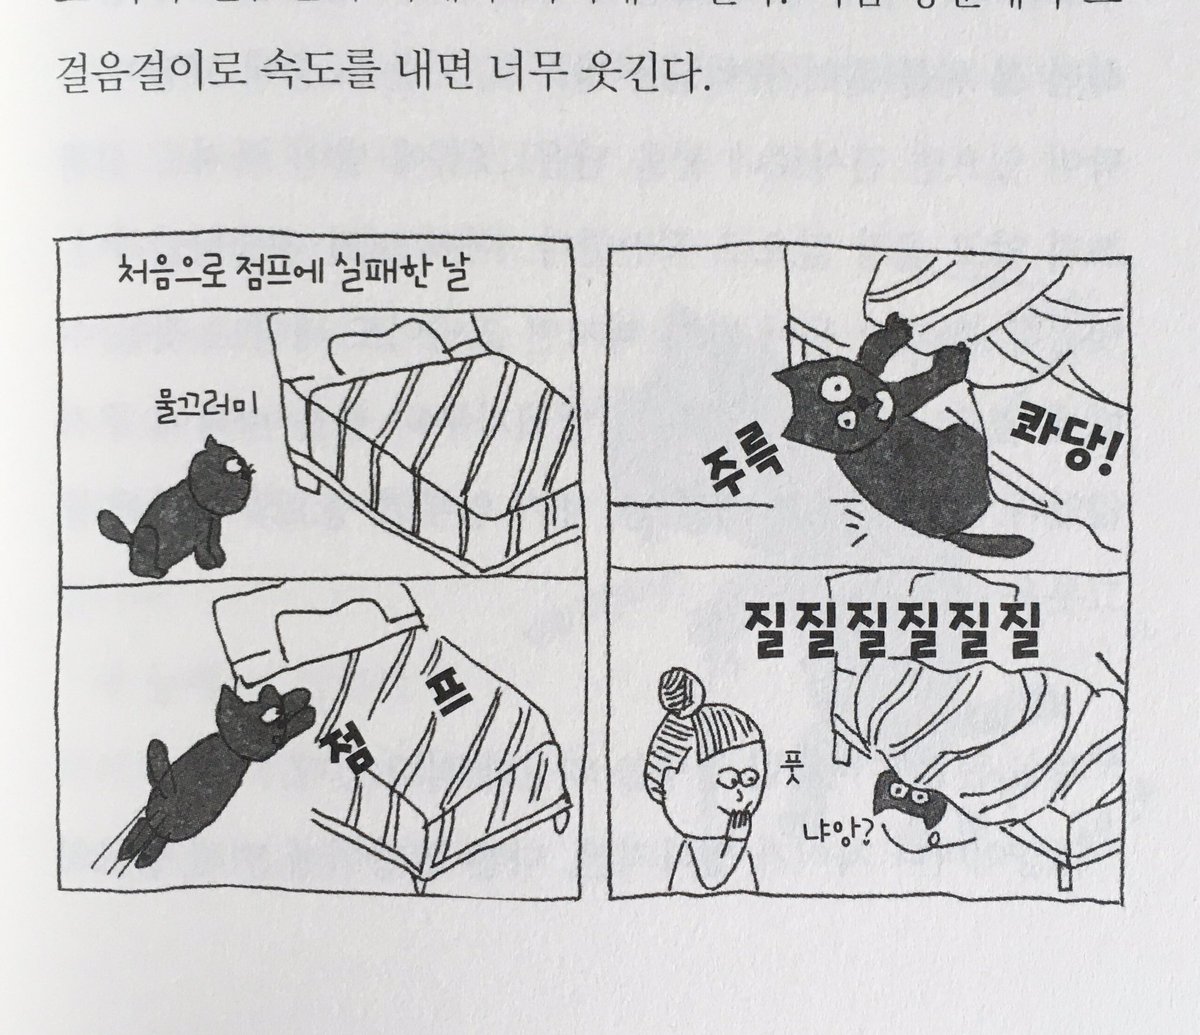 霜田あゆ美 On Twitter 斉藤ユカさんの 老猫と歩けば の韓国版が刊行された イラストの描き文字が韓国語になっているのを見て楽しんでいる 韓国のデザイナーさん 手間だったろうなぁ 今 まさに老猫生活まっしぐらのうちの花子さん うなづくとこいっぱいの本